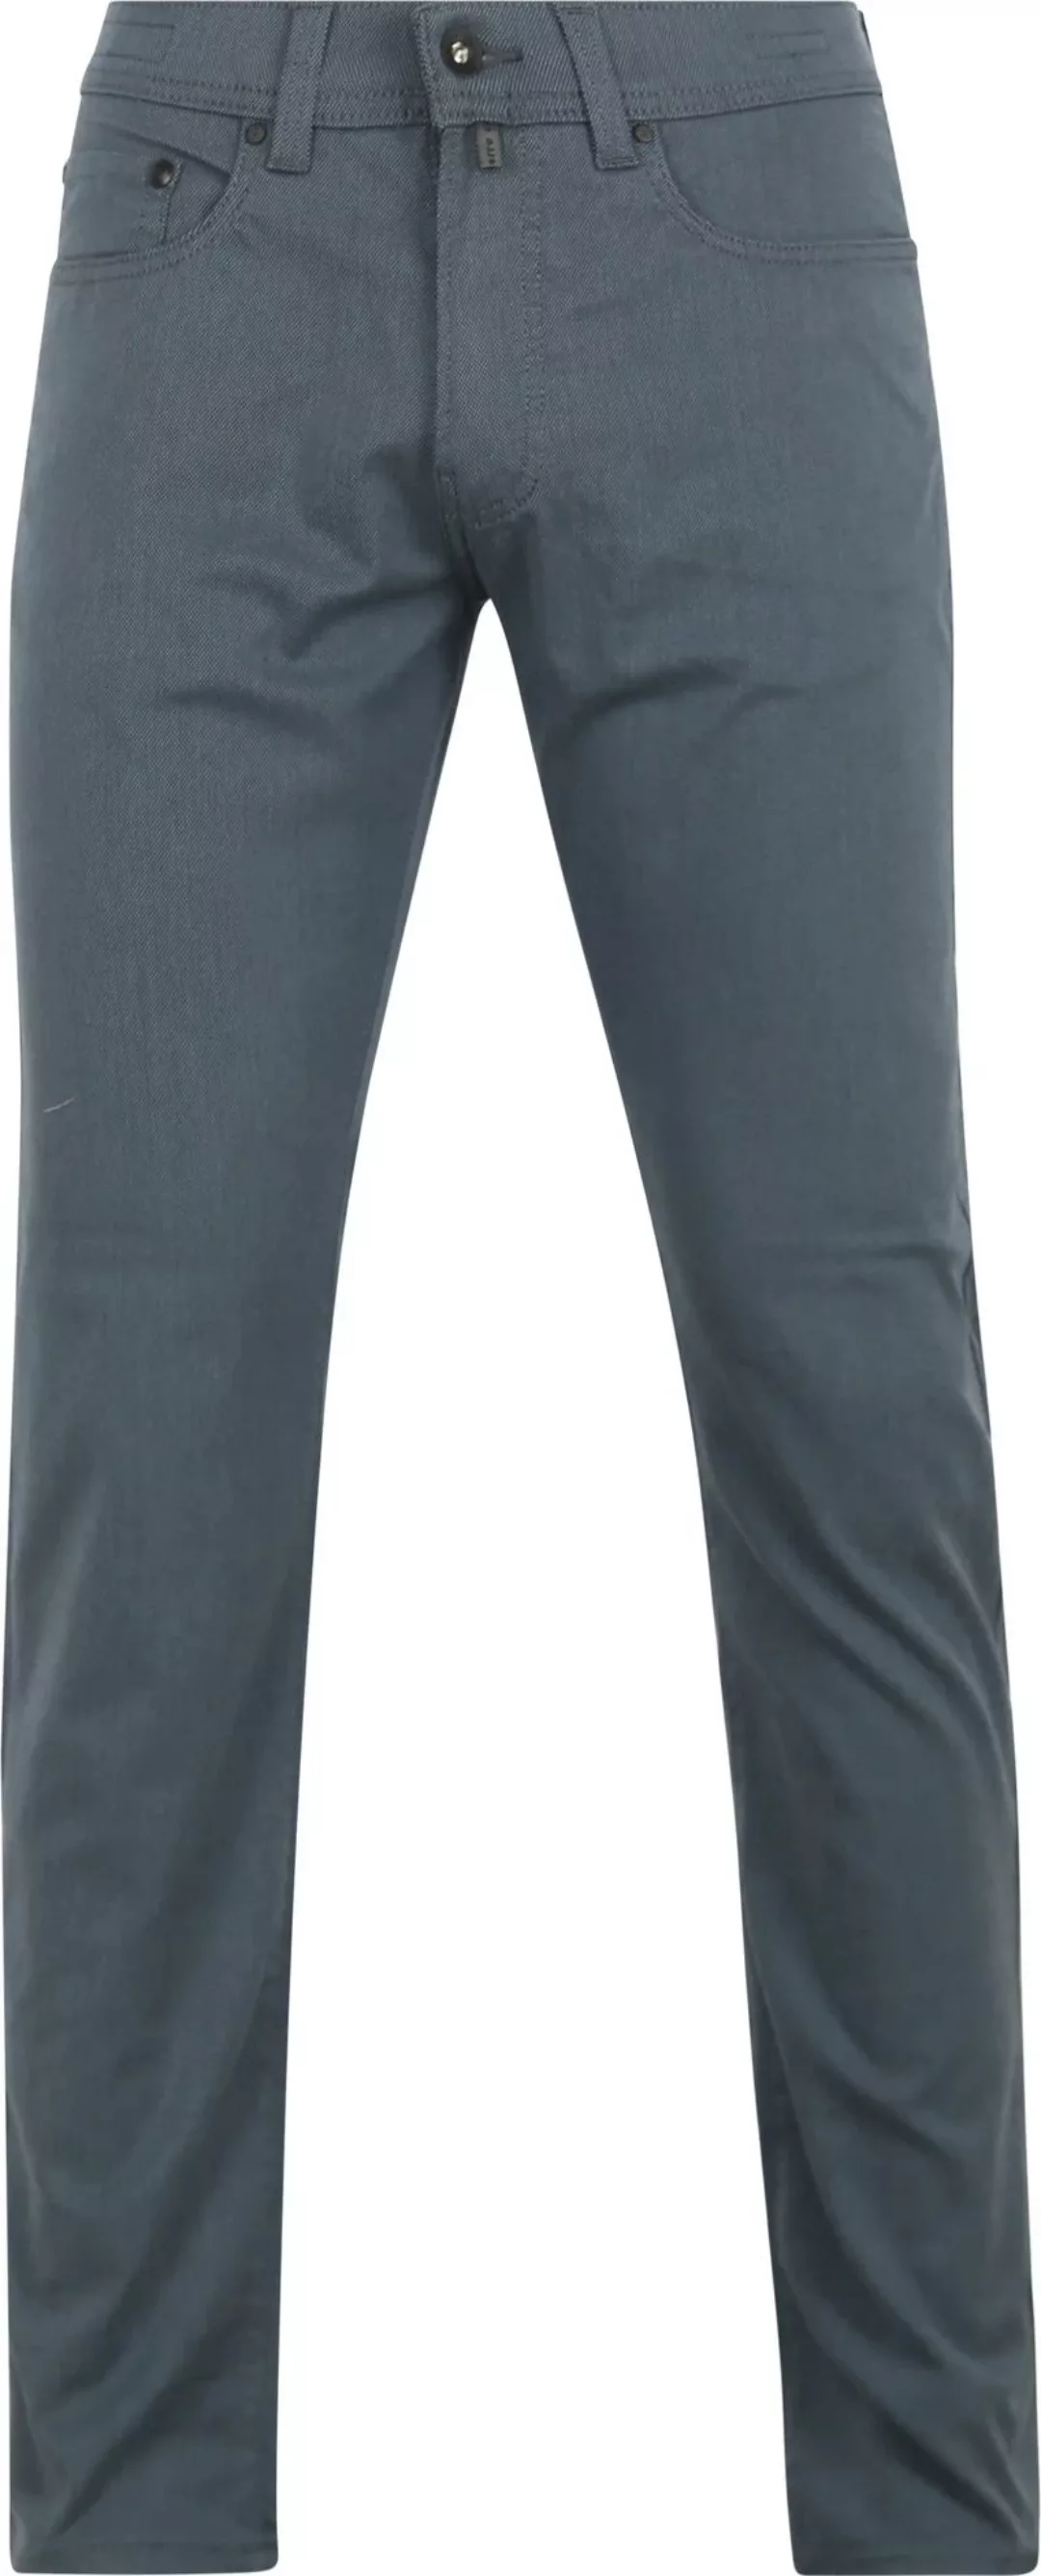 Pierre Cardin Trousers Lyon Tapered Ocean Blau - Größe W 33 - L 32 günstig online kaufen